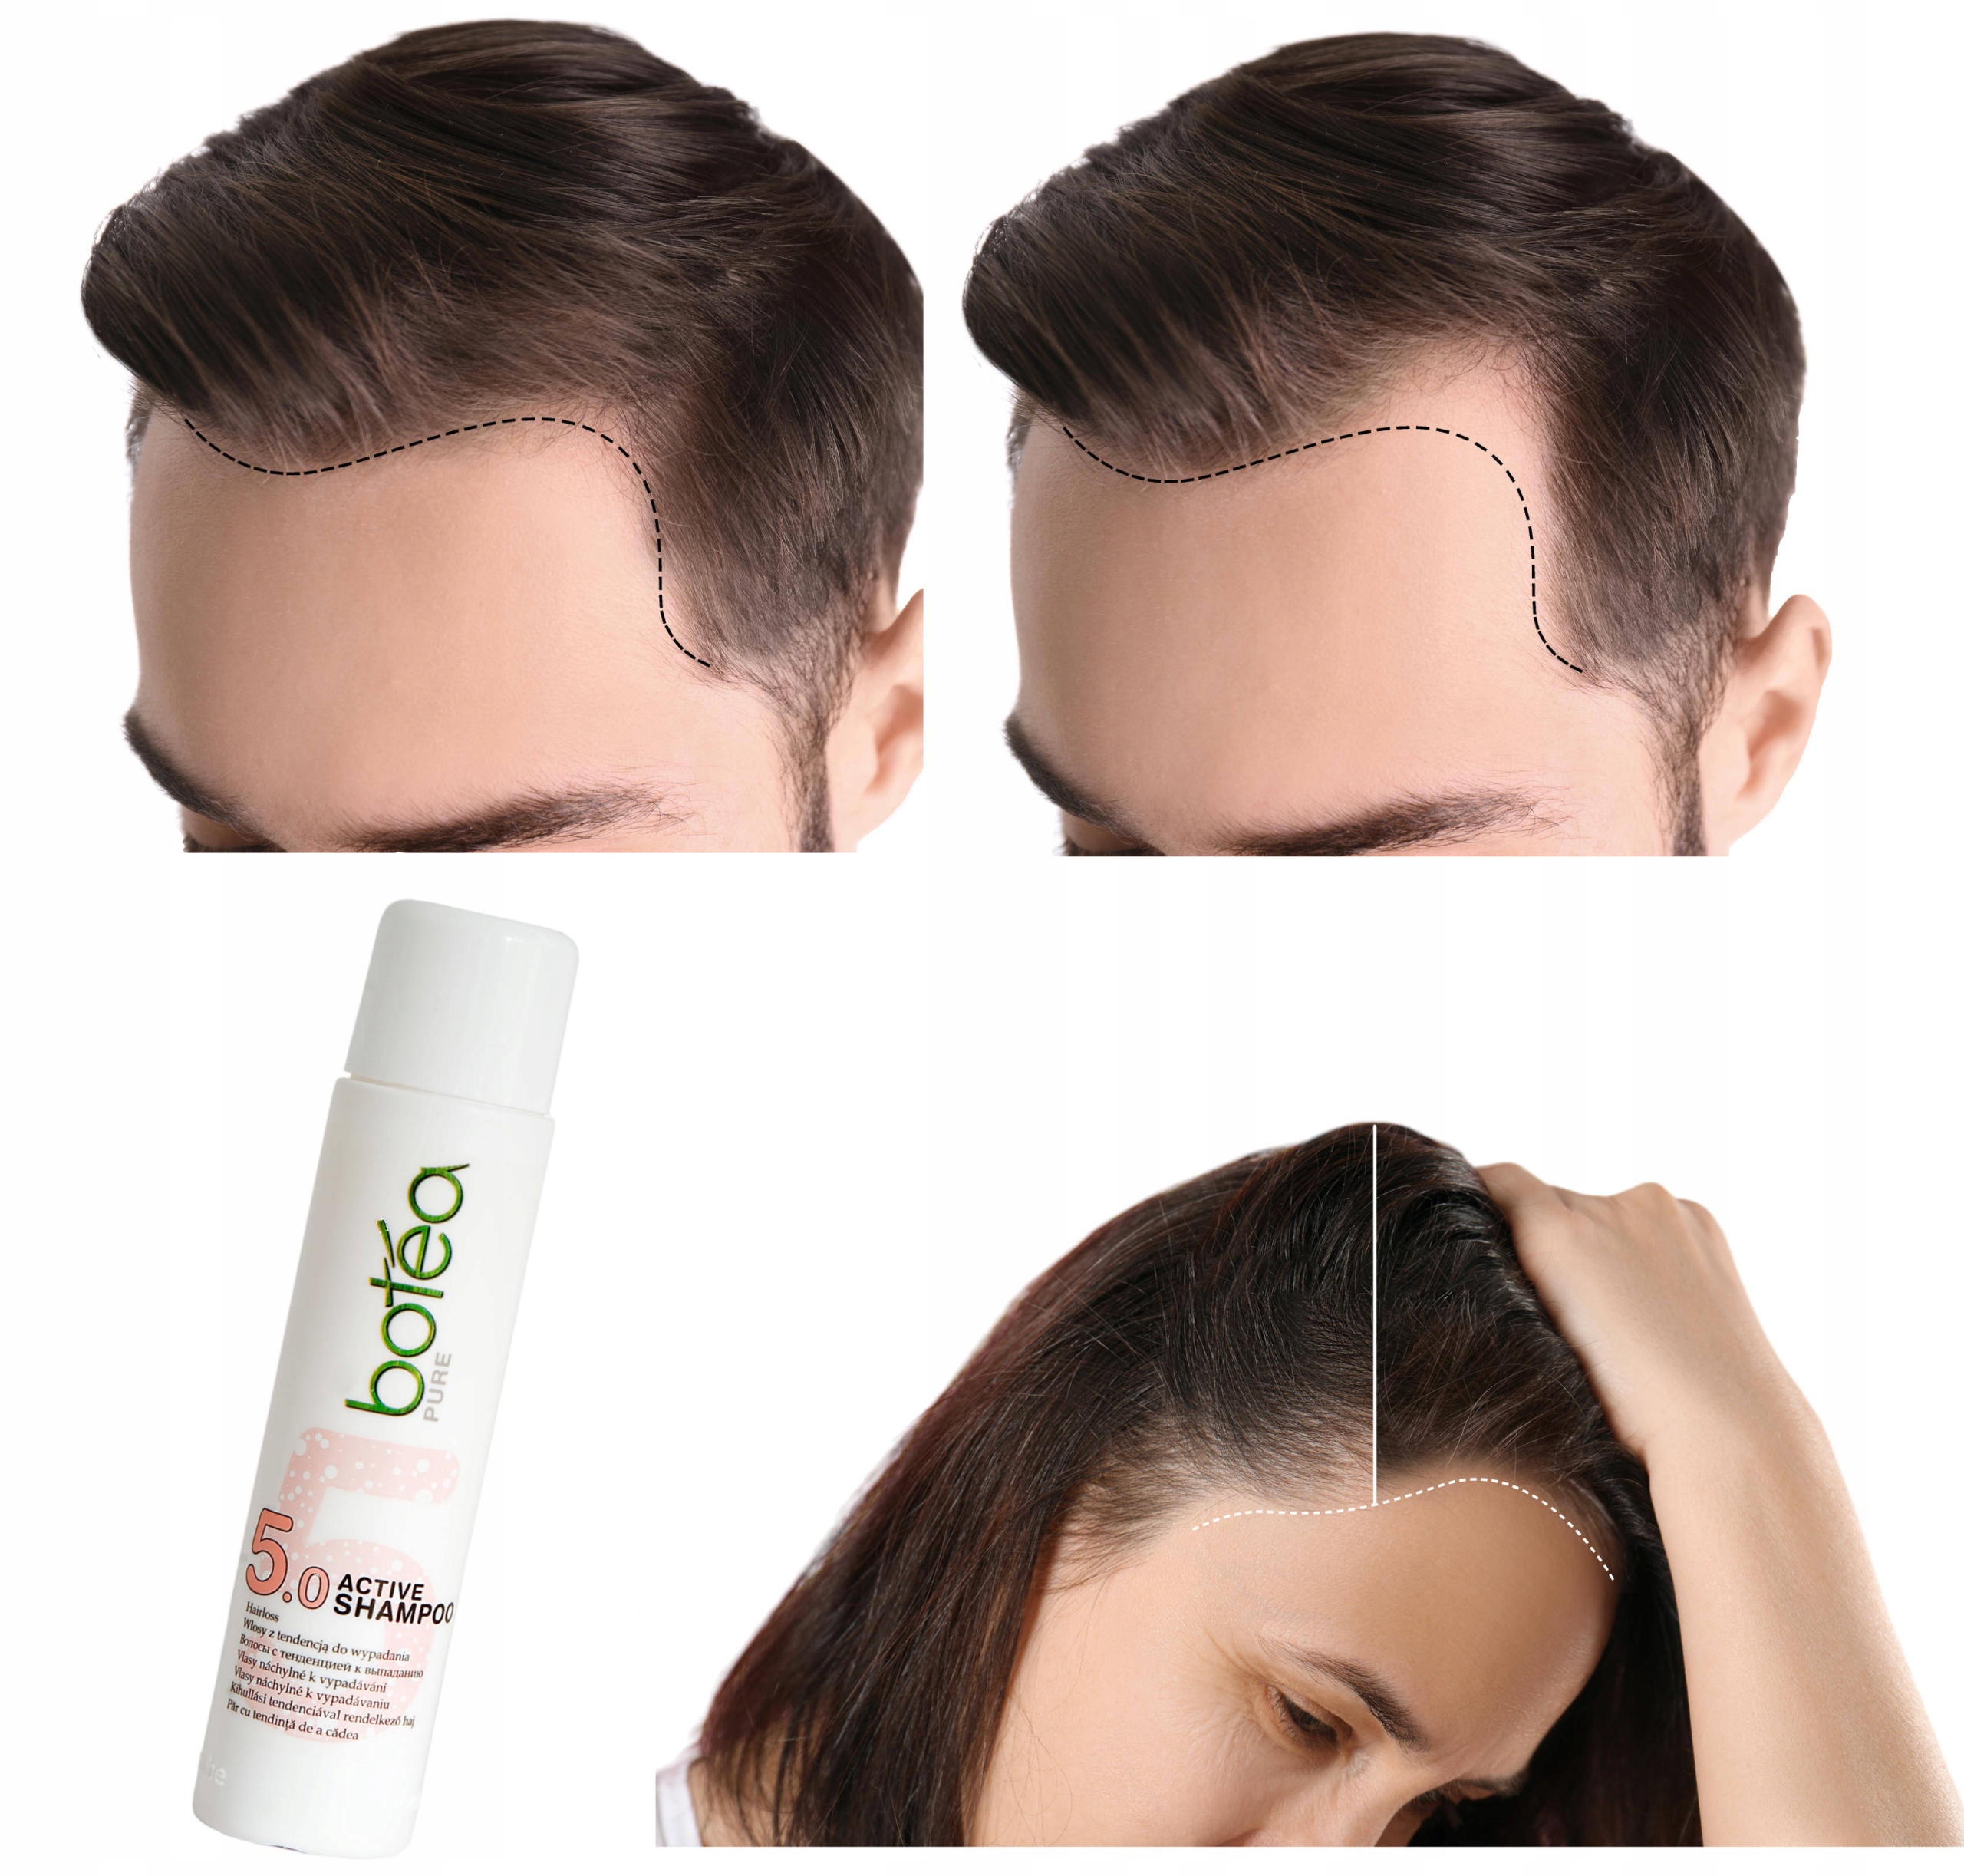 szampon przeciw wypadaniu włosów 5.0